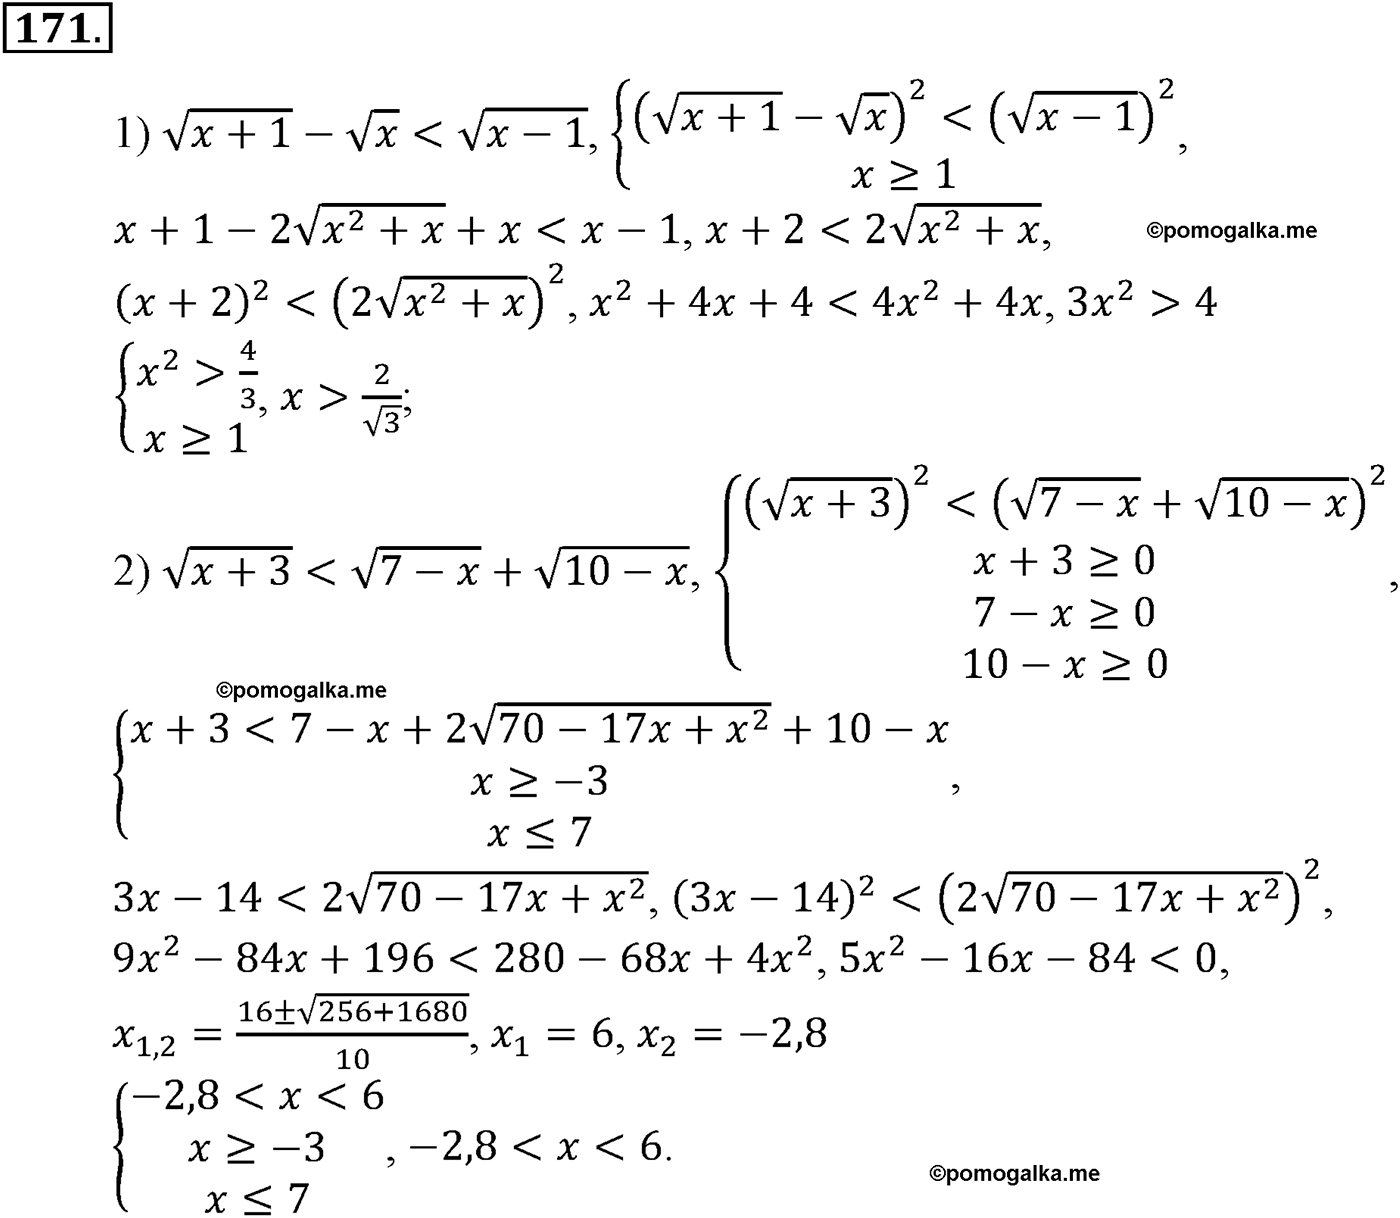 разбор задачи №171 по алгебре за 10-11 класс из учебника Алимова, Колягина